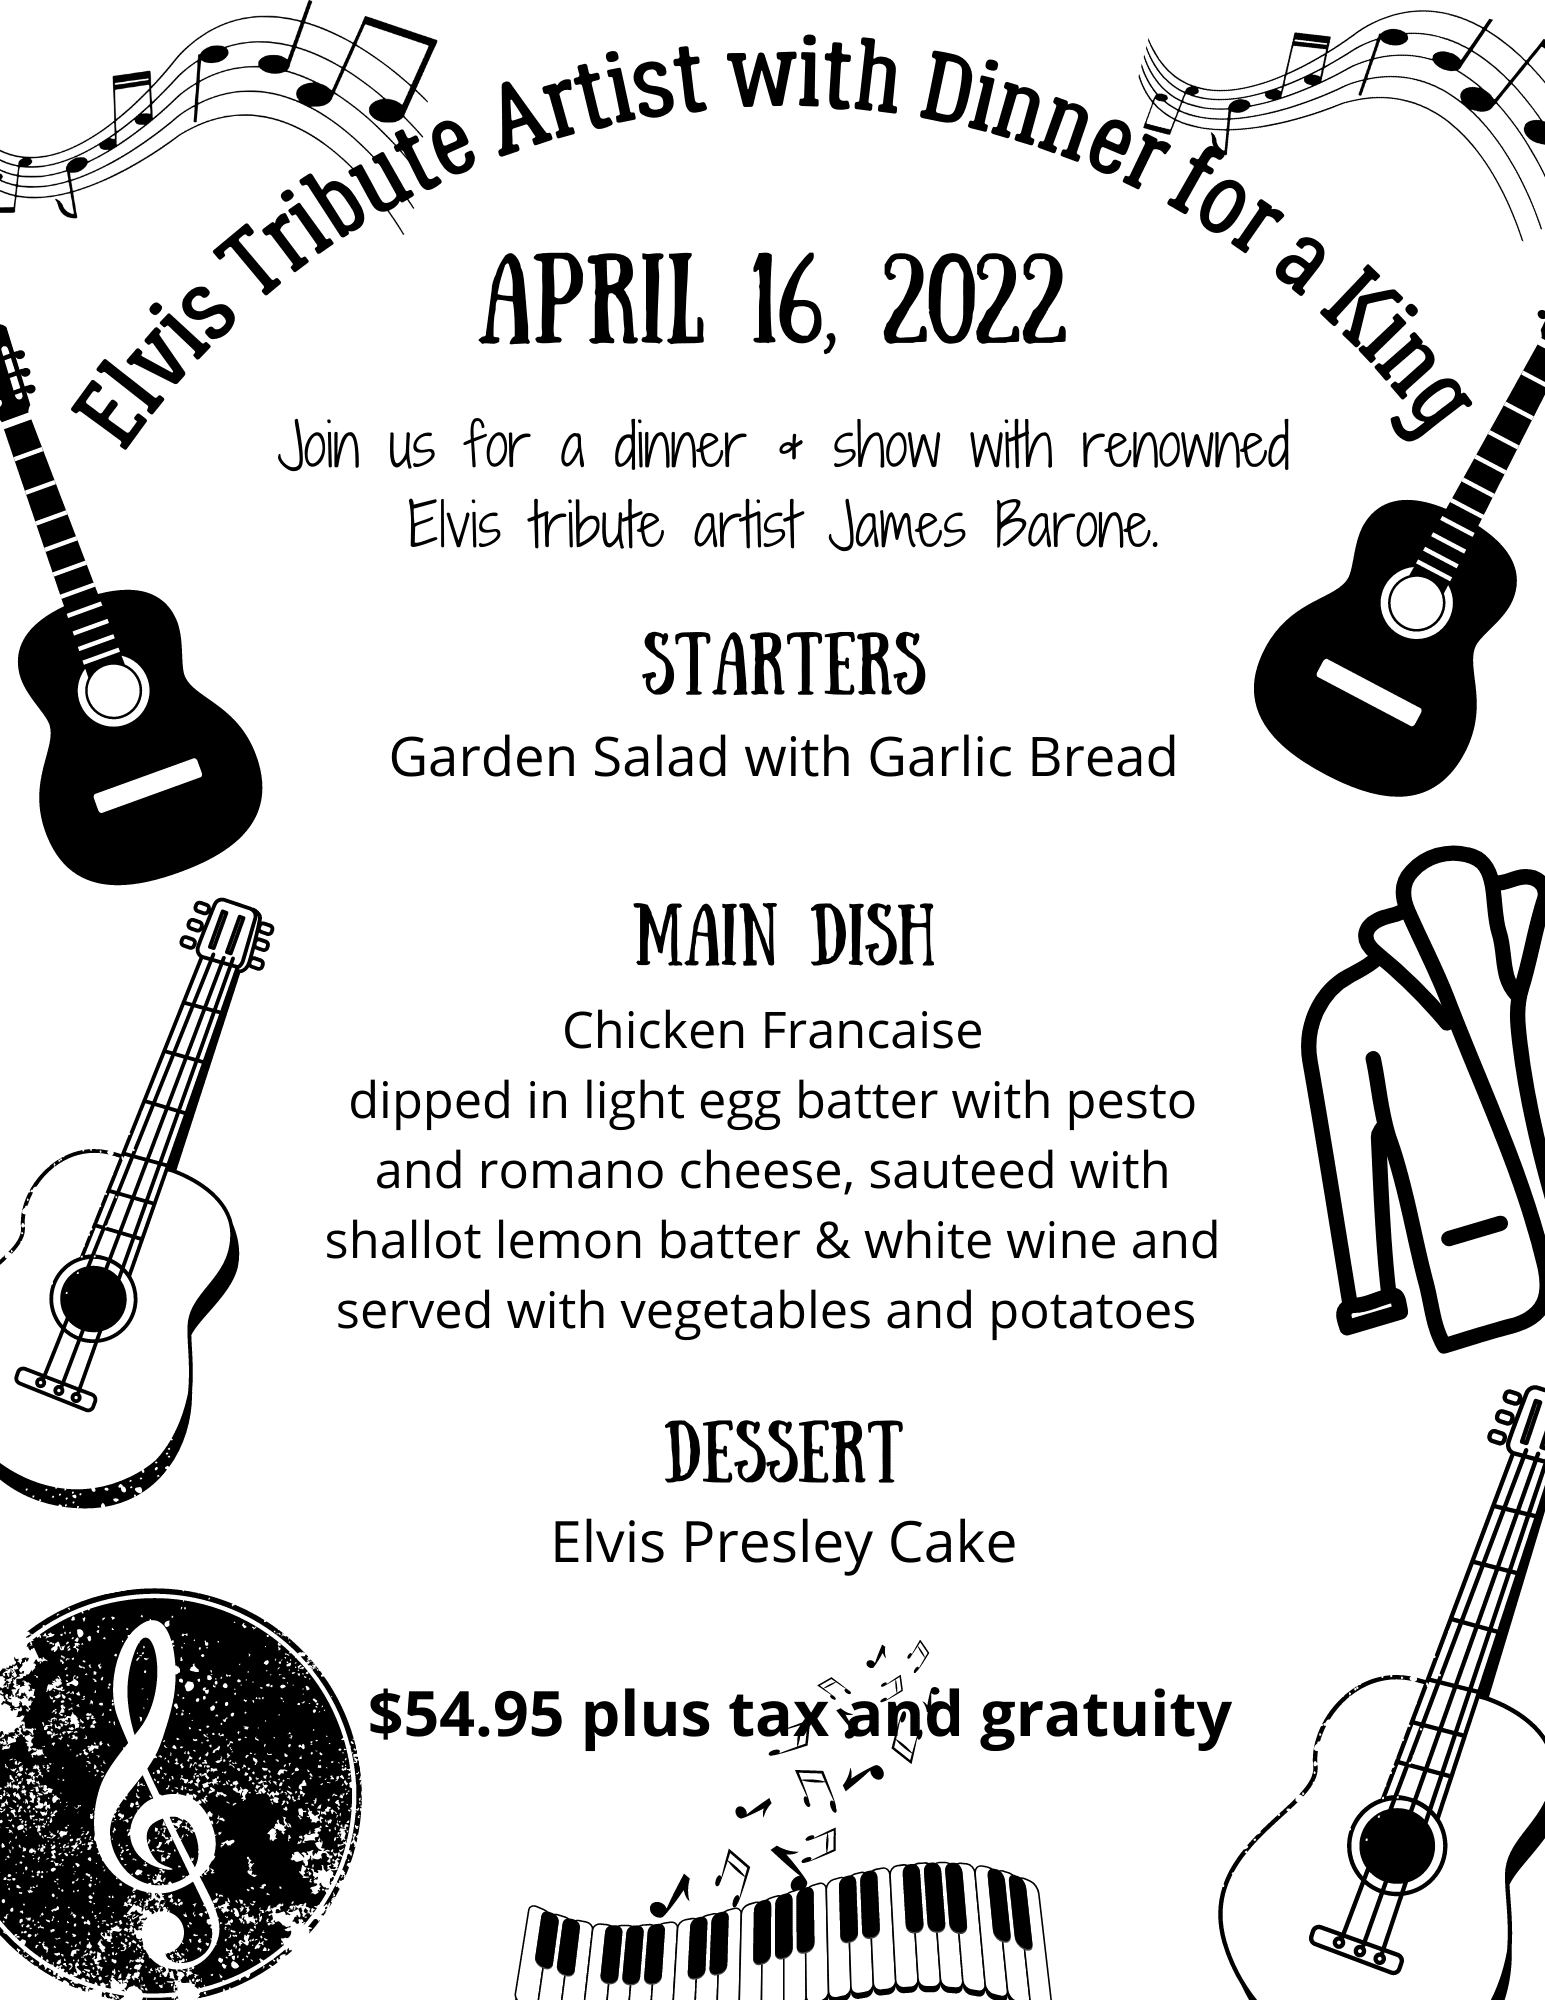 Elvis Concert with dinner April 16